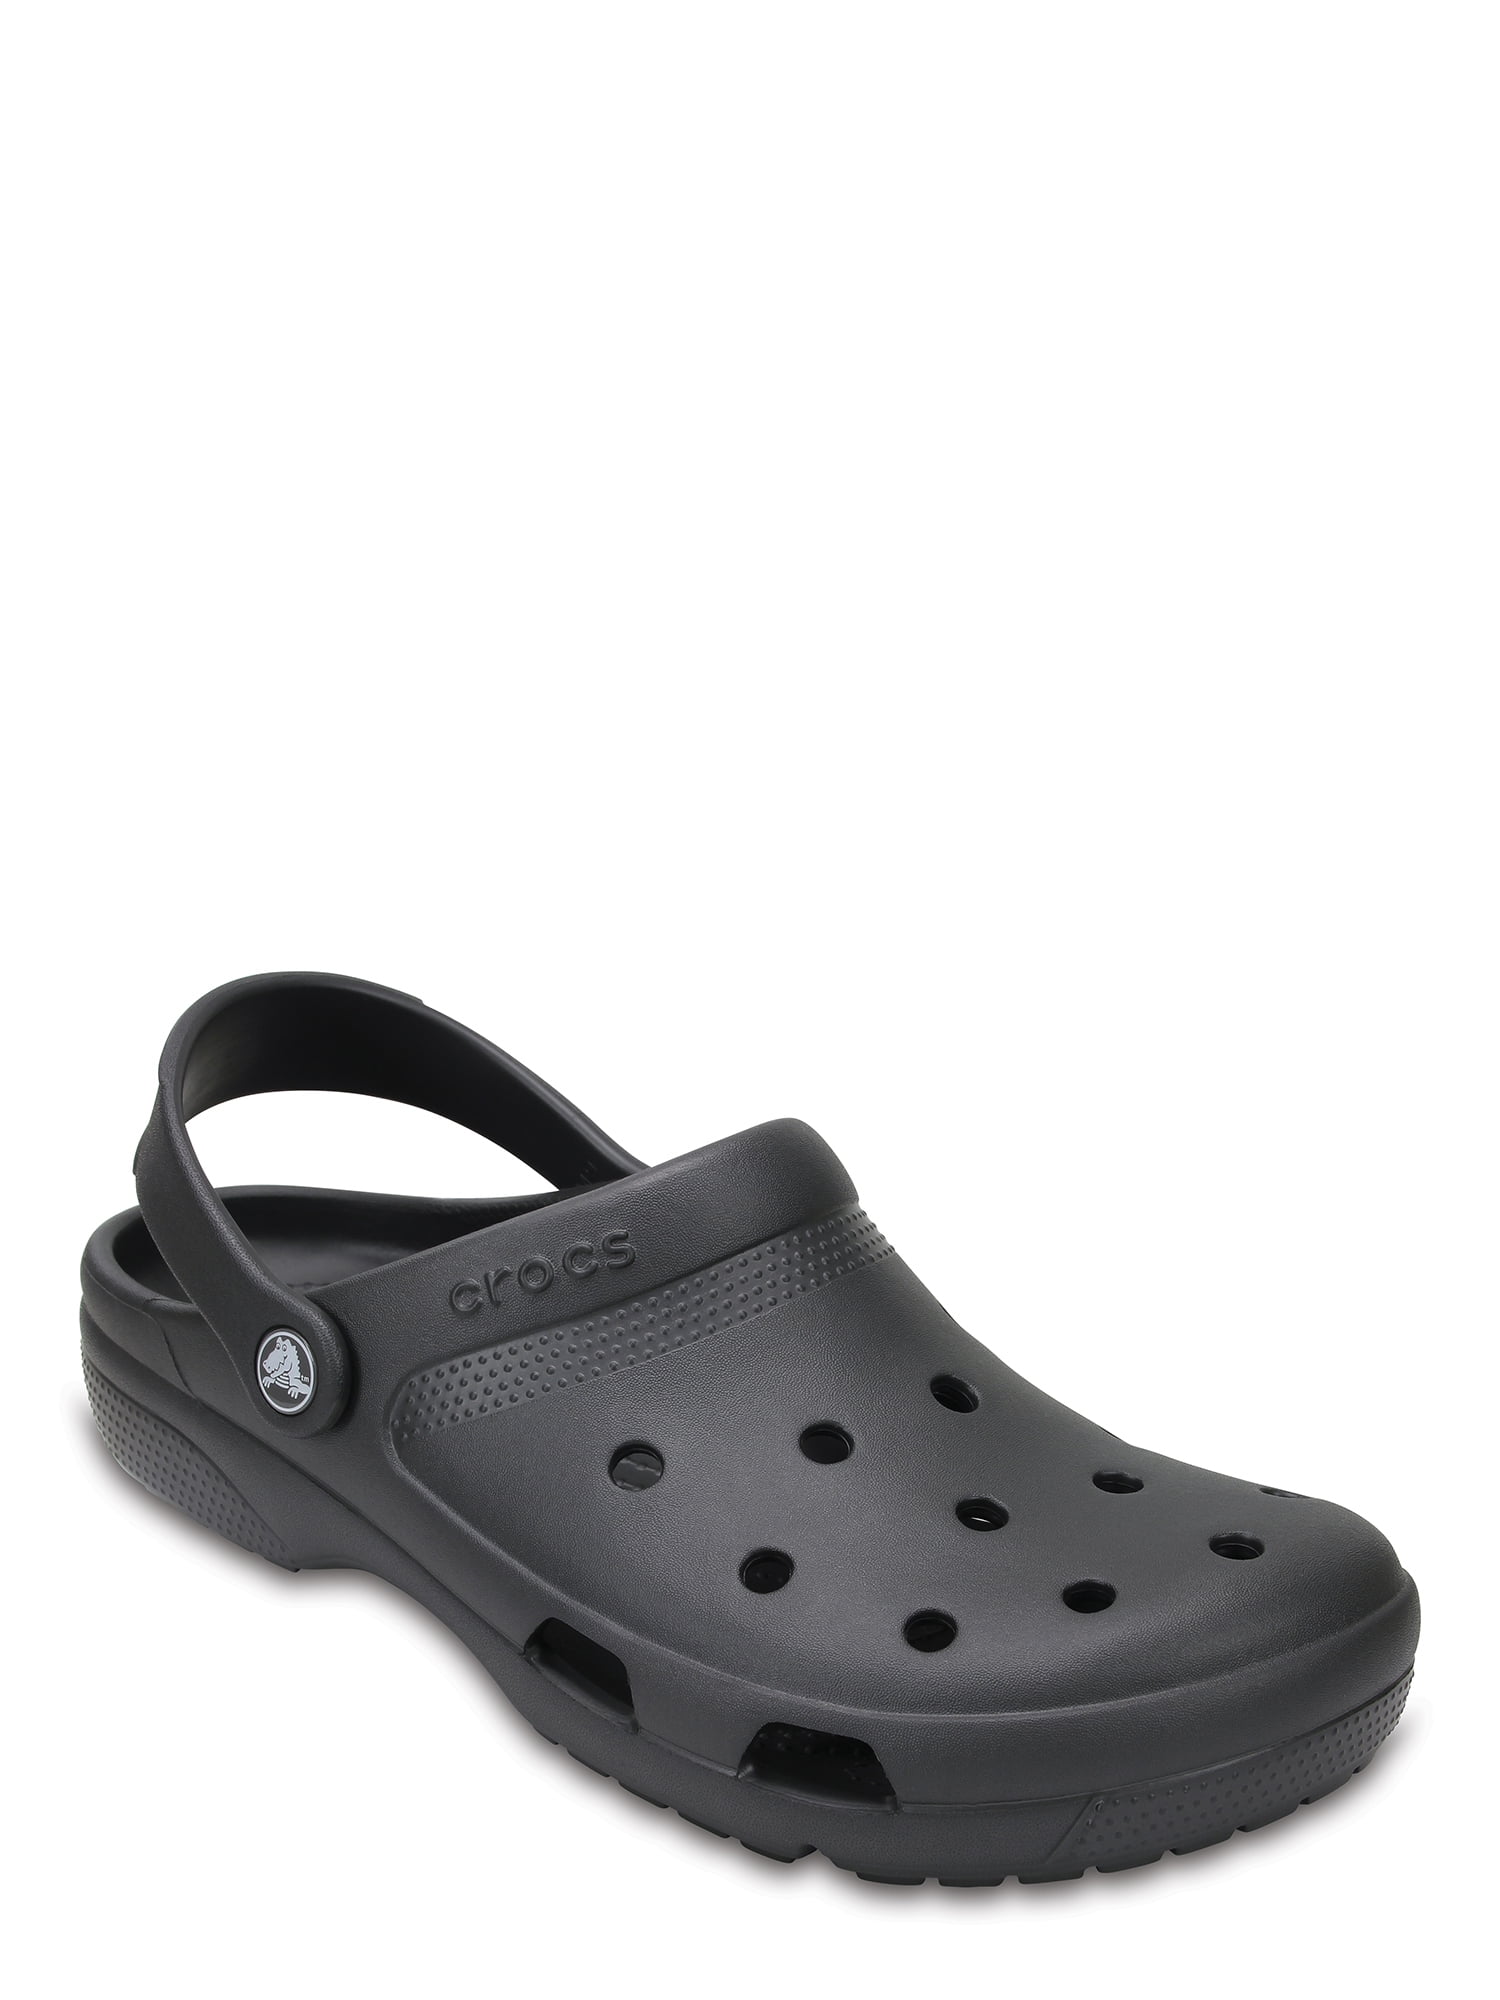 cheap black crocs